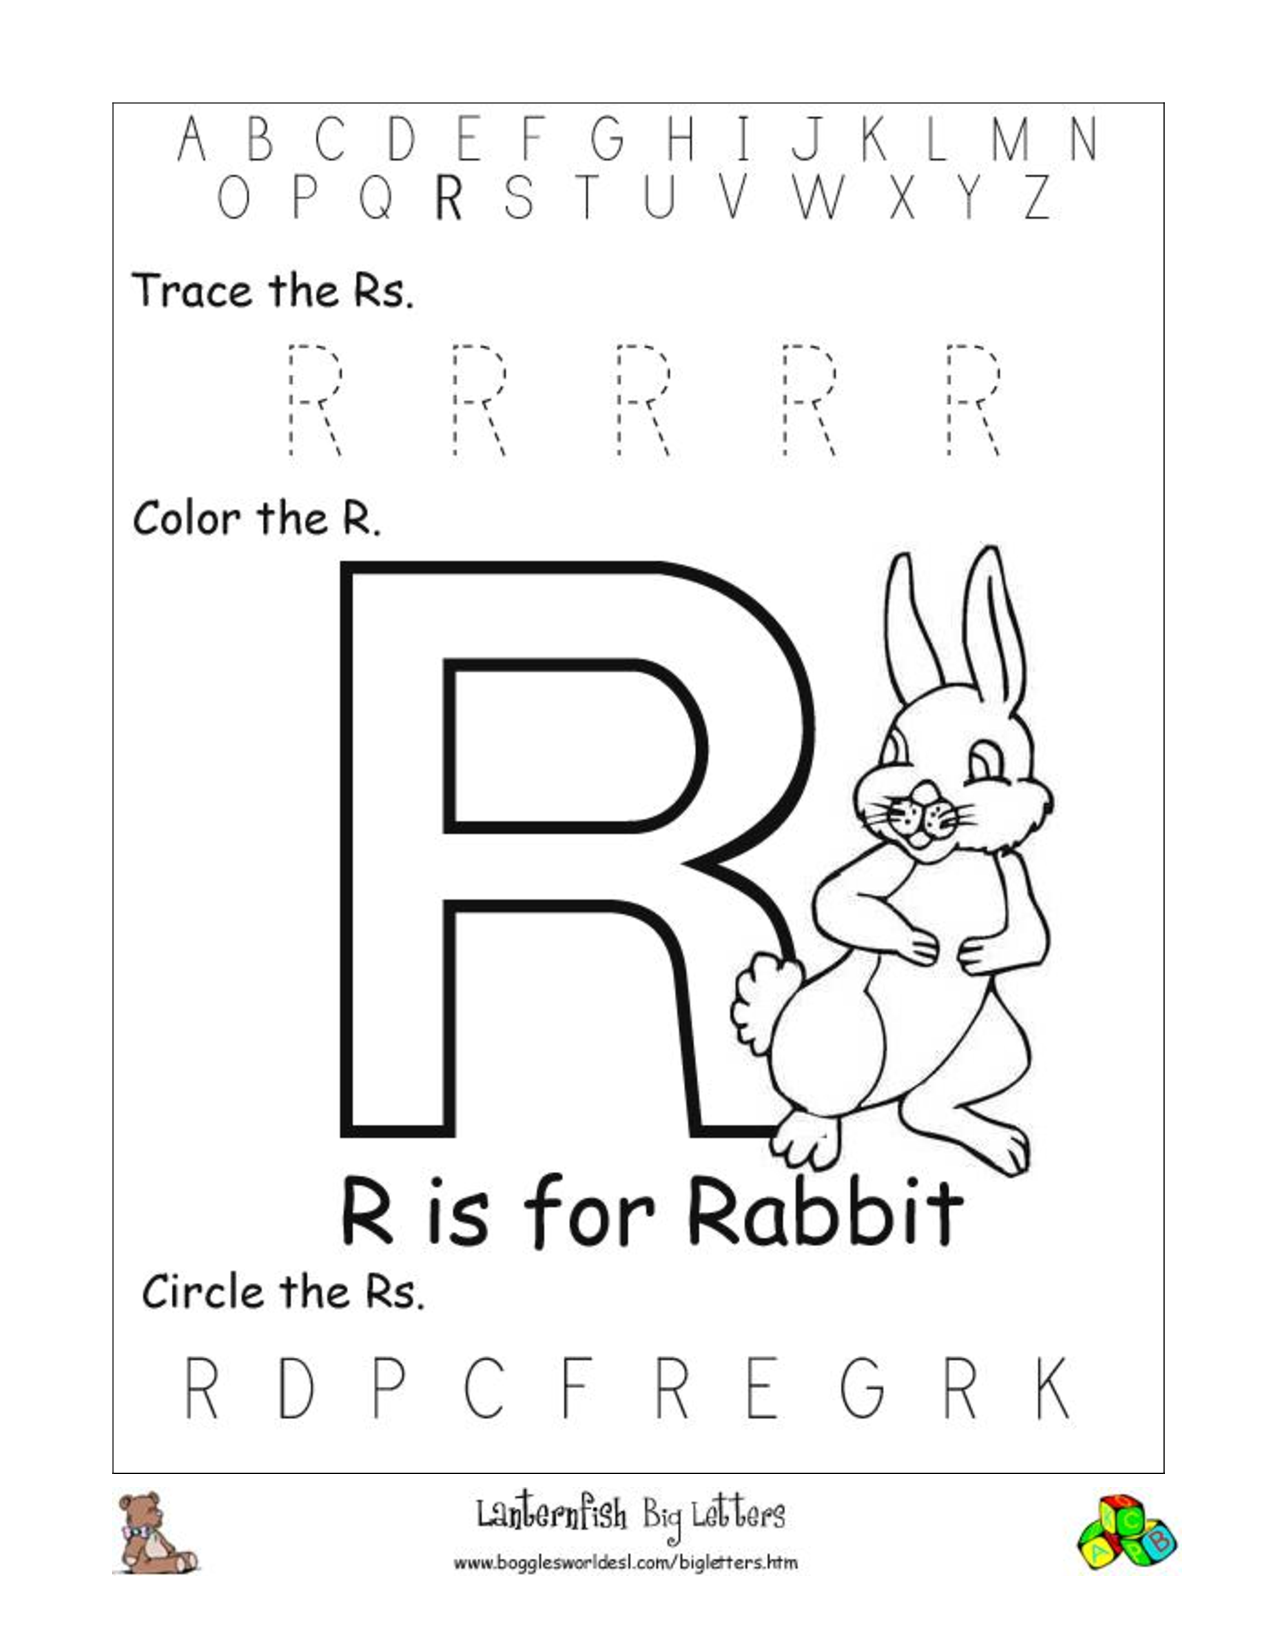 12 Best Images Of Letter R Recognition Worksheets Letter R Preschool 